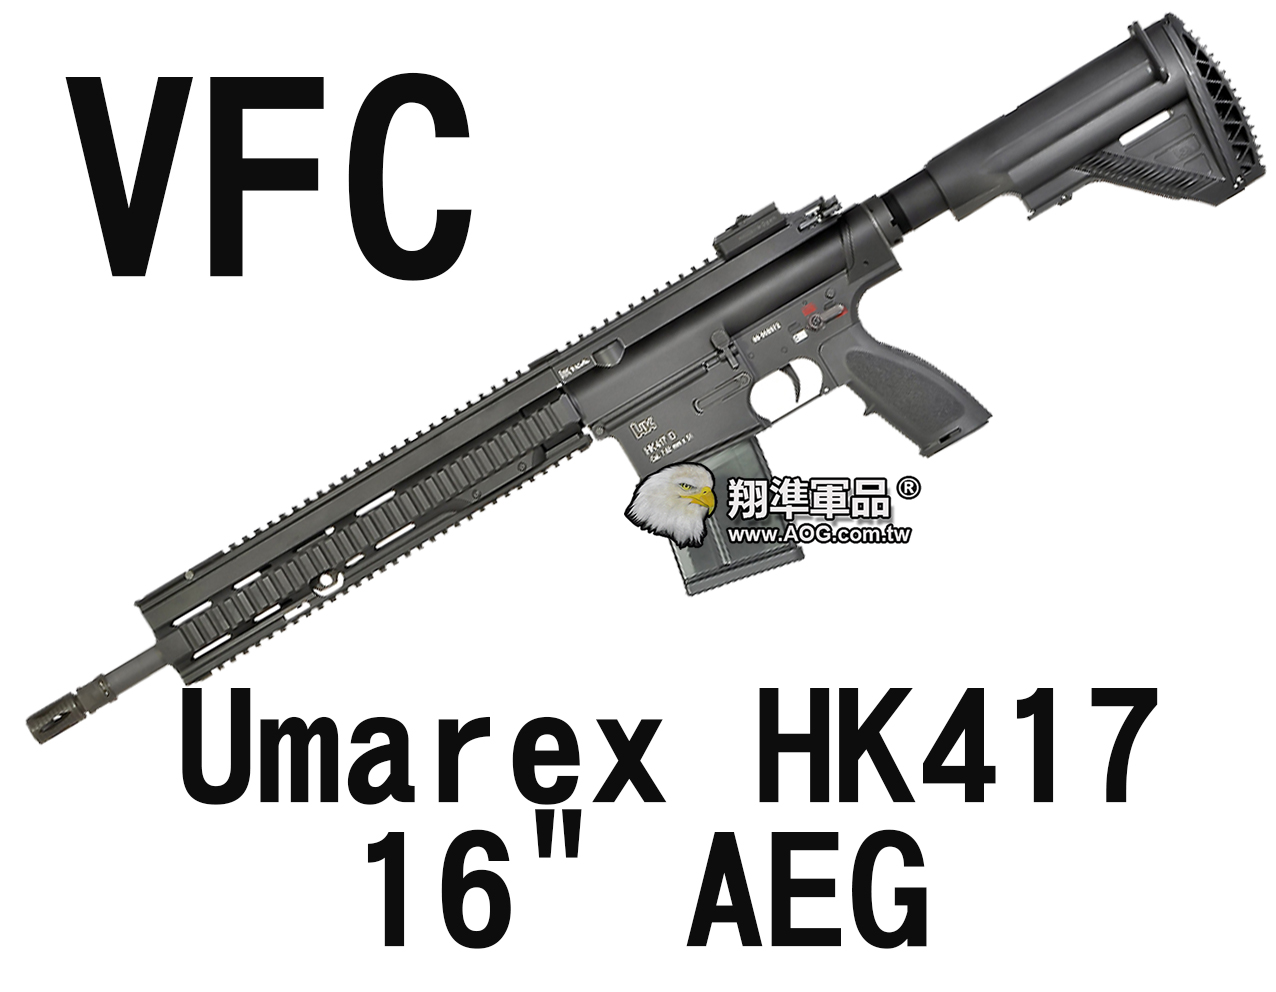 【翔準軍品AOG】【VFC】Umarex HK417  16 AEG 長槍 電動槍 黑色 VF1-LHK417-BK03